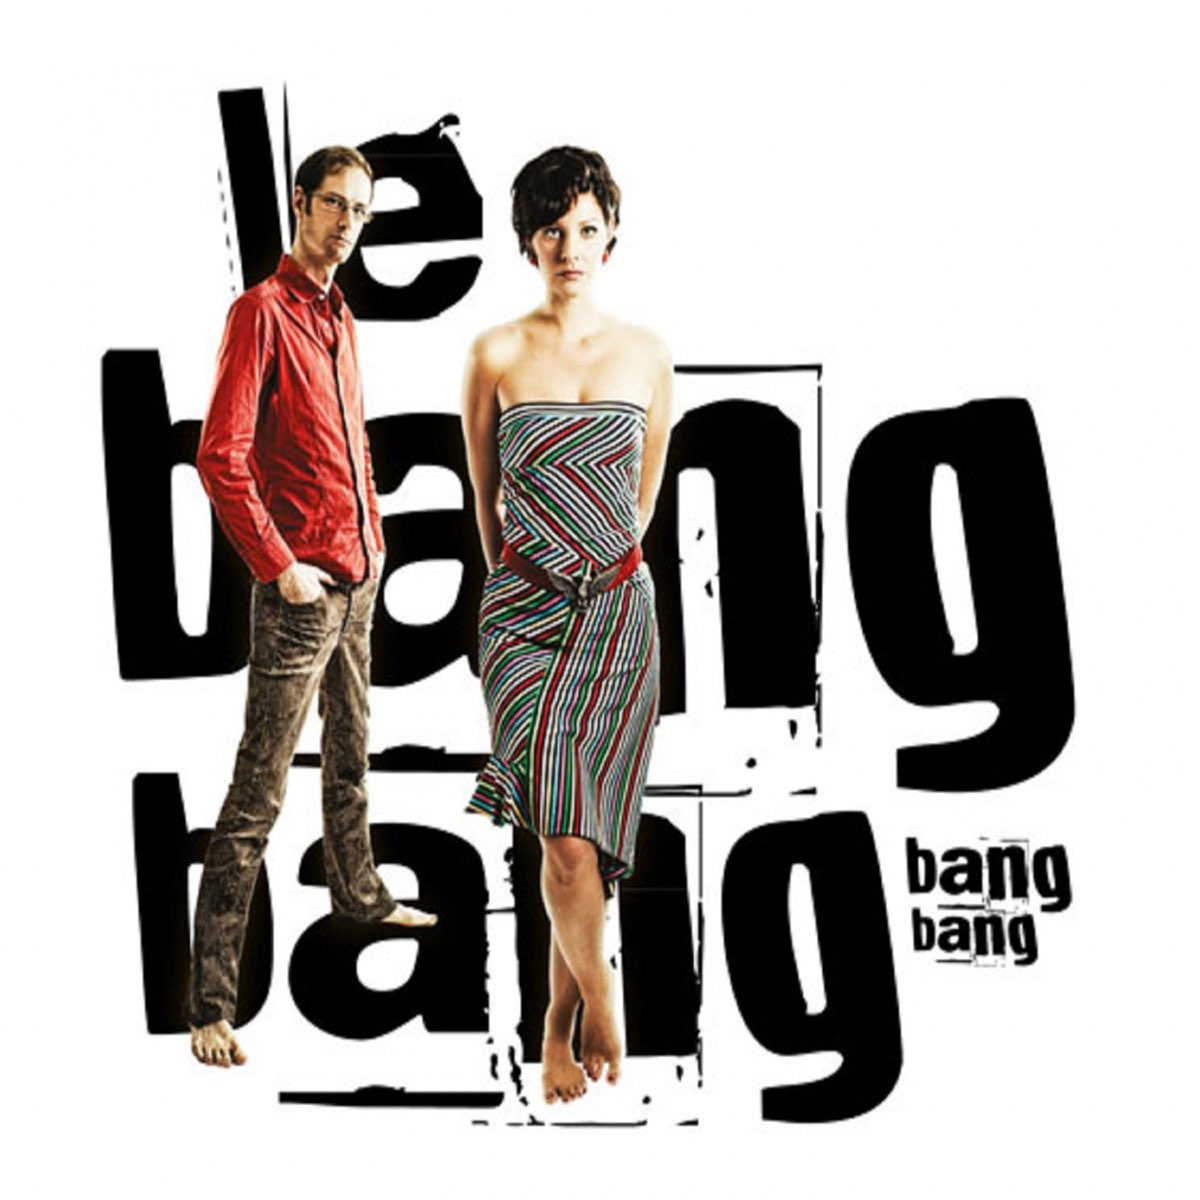 Blink bang bang born